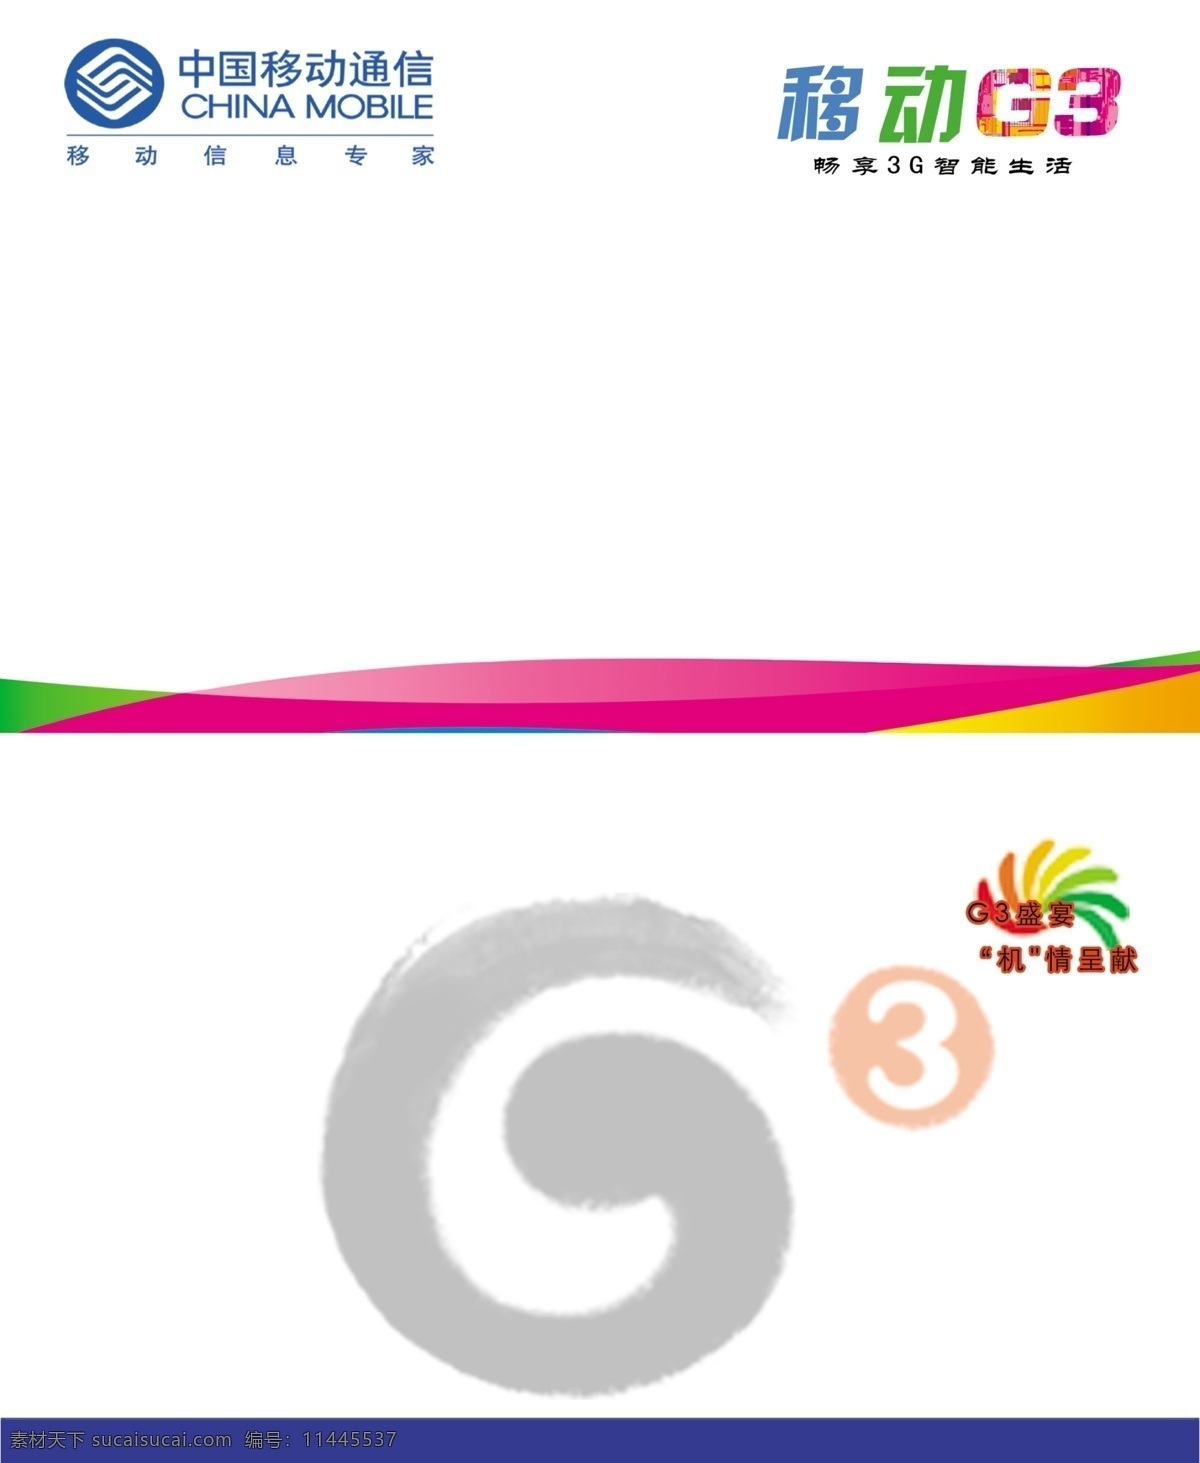 中国移动g3 标志 背景 中国移动 g3 手机 中国移动标志 g3标志 移动 名片模板 名片卡片 广告设计模板 源文件